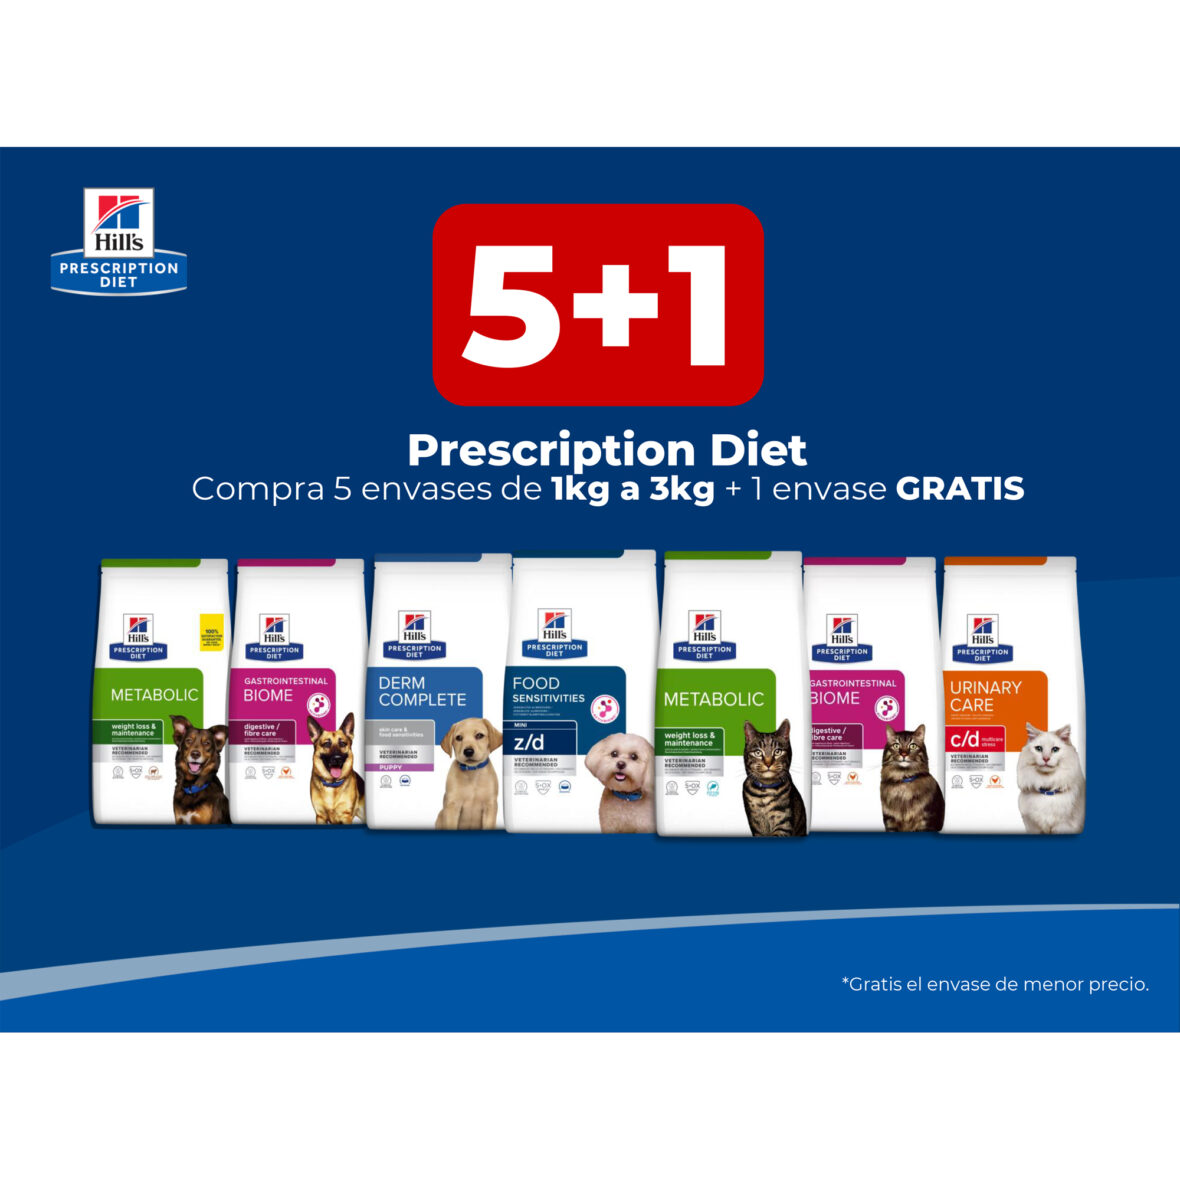 5+1 Prescription Diet Compra 5 envases de 1kg a 3kg + 1 envase GRATIS